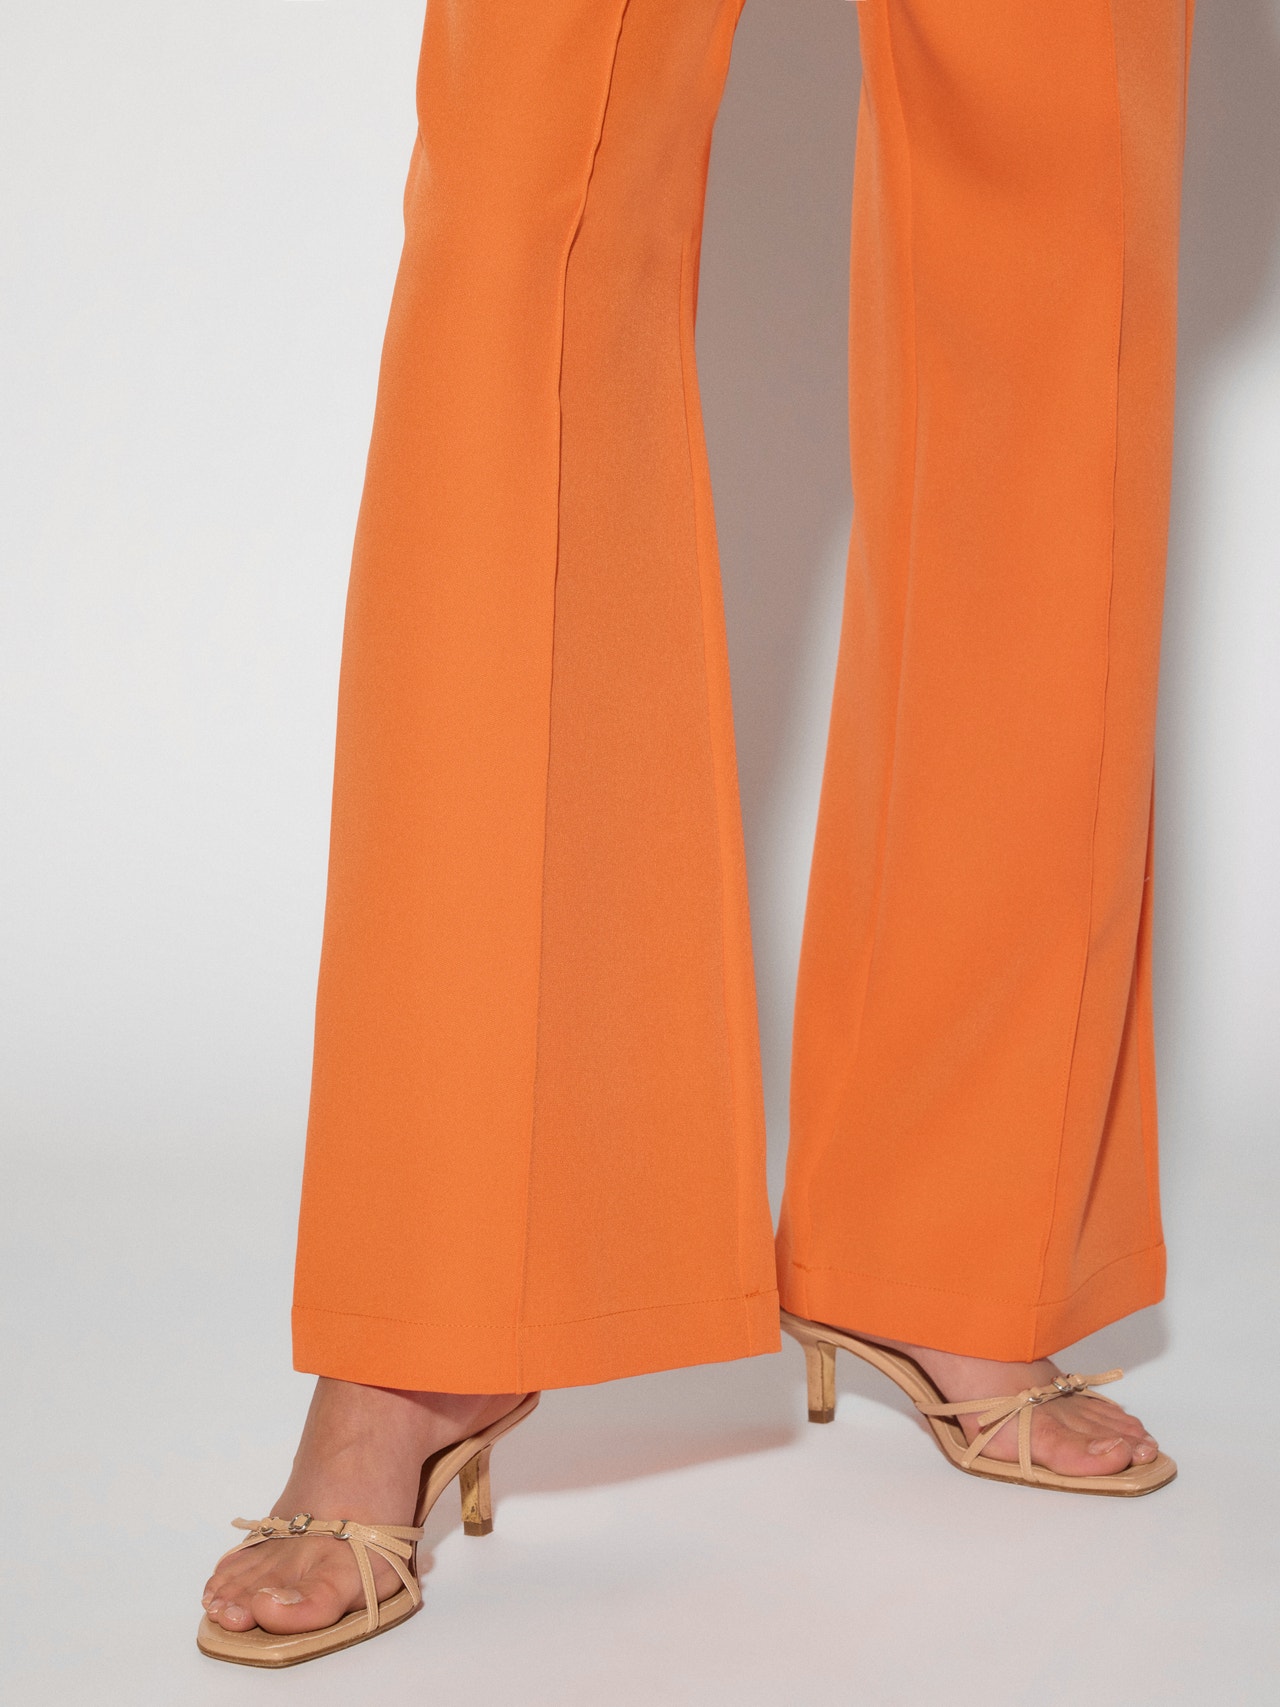 Vero Moda SOMETHINGNEW X KLARA HELLQVIST Pantalons -Exotic Orange - 10288151